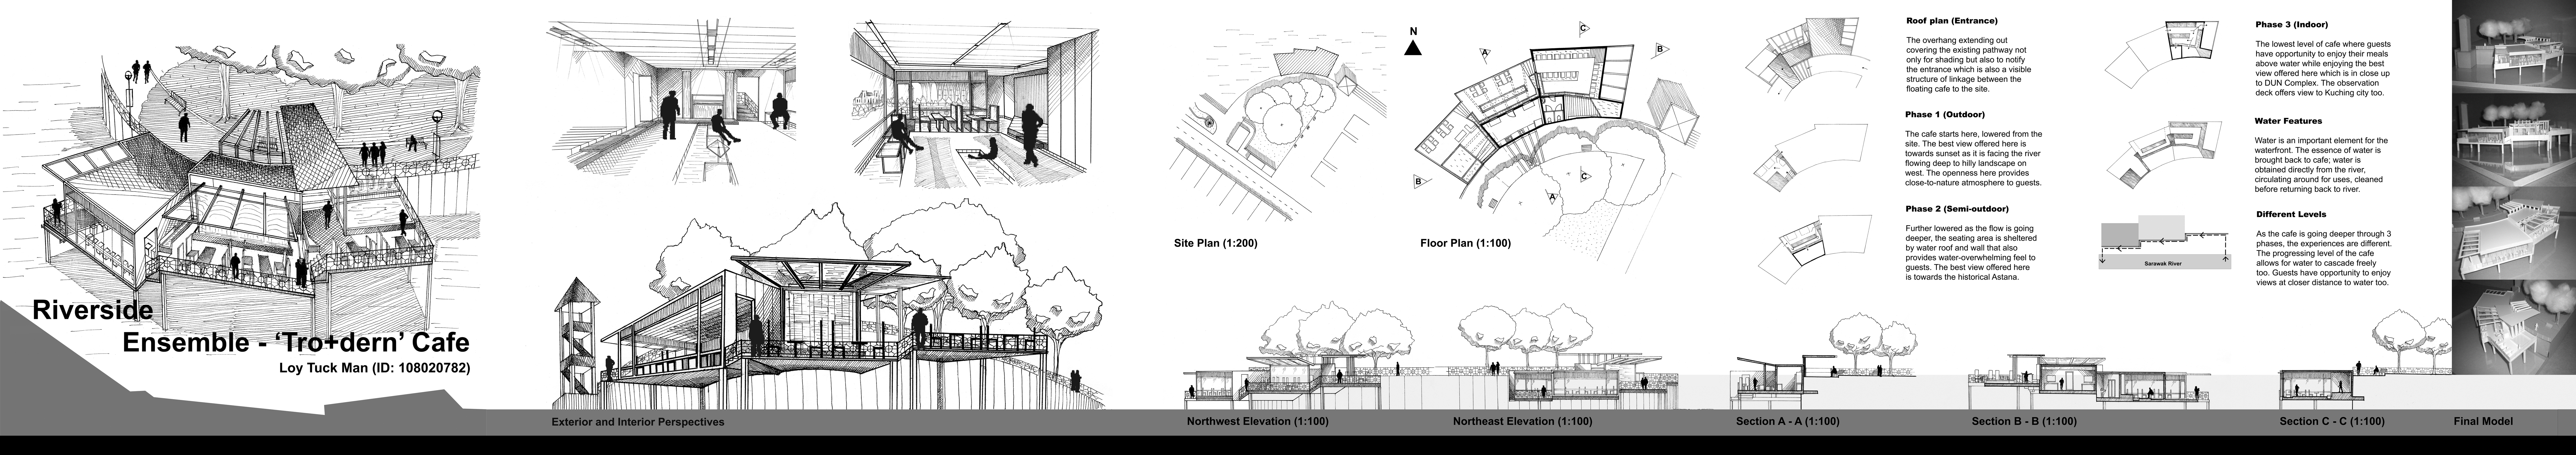 Architecture Design 201 (Project 2: Riverside Ensemble) | My Blog City ...